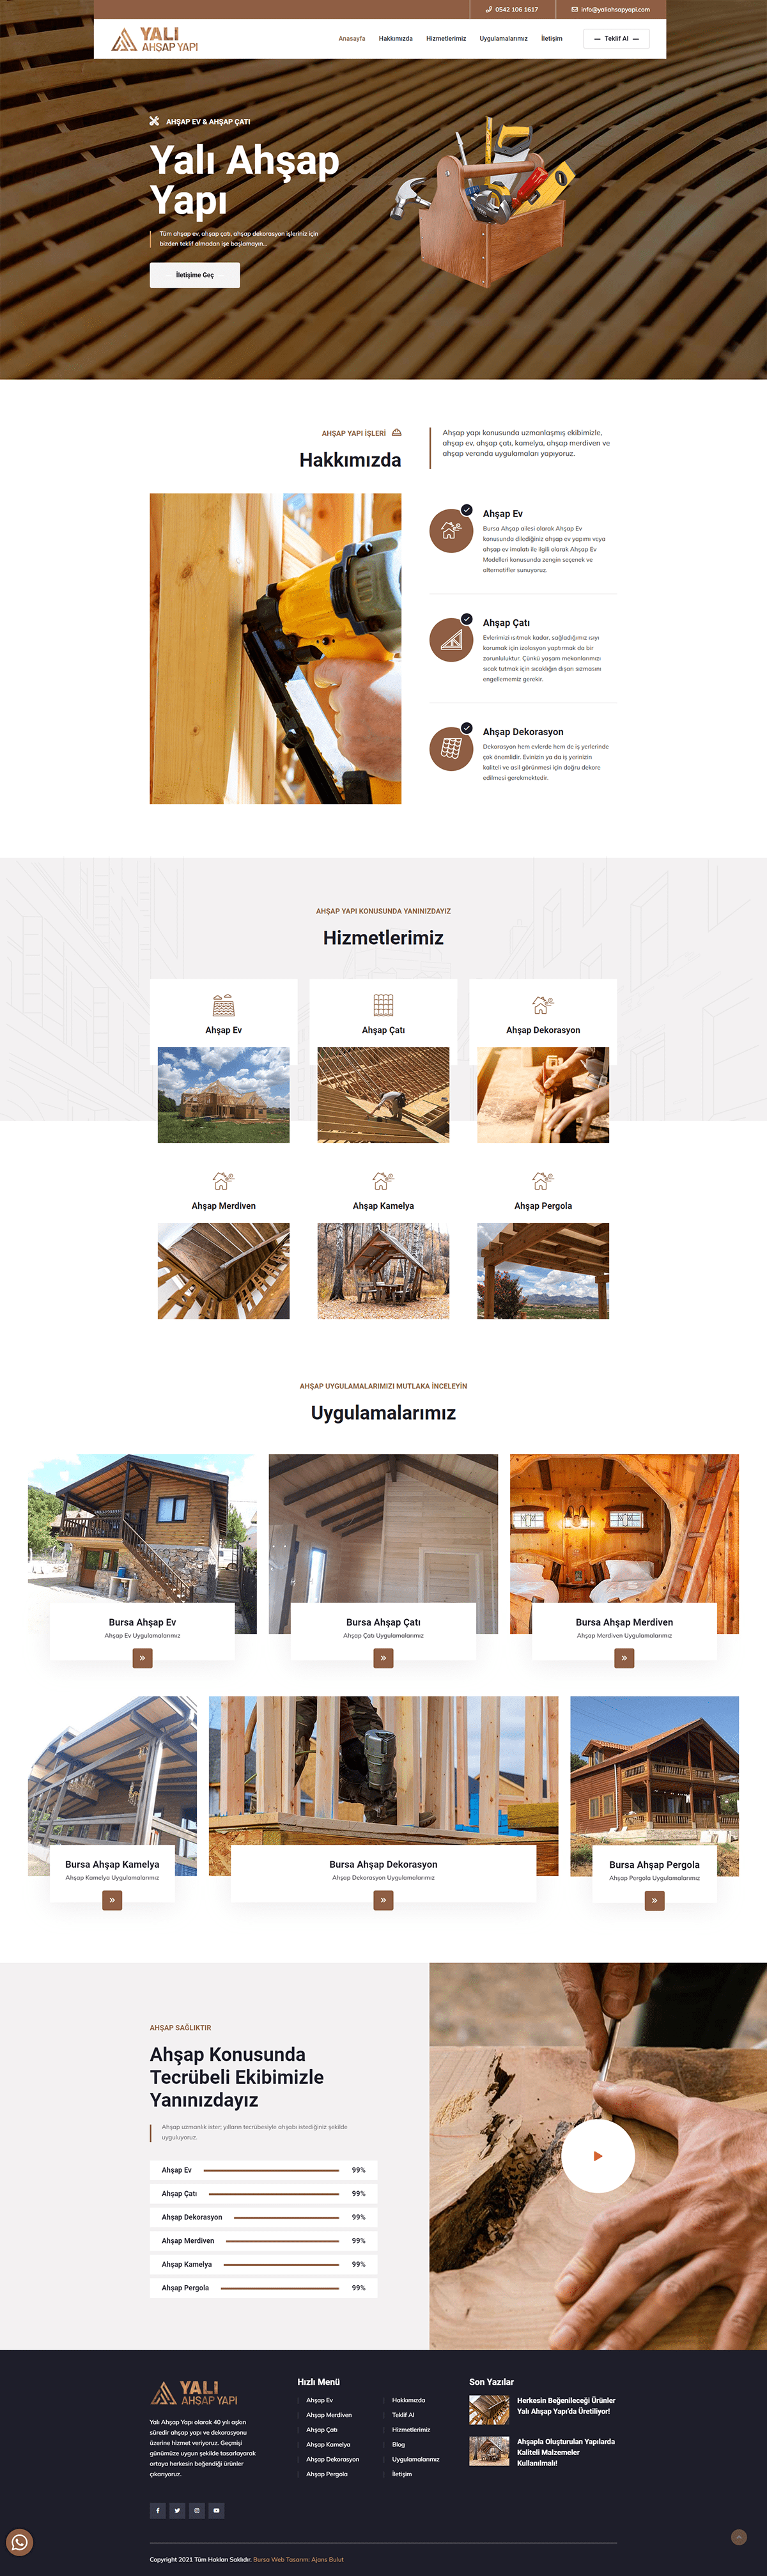 build construction home Mobile app UI/UX Website wood Wood Structure wooden Wooden Website